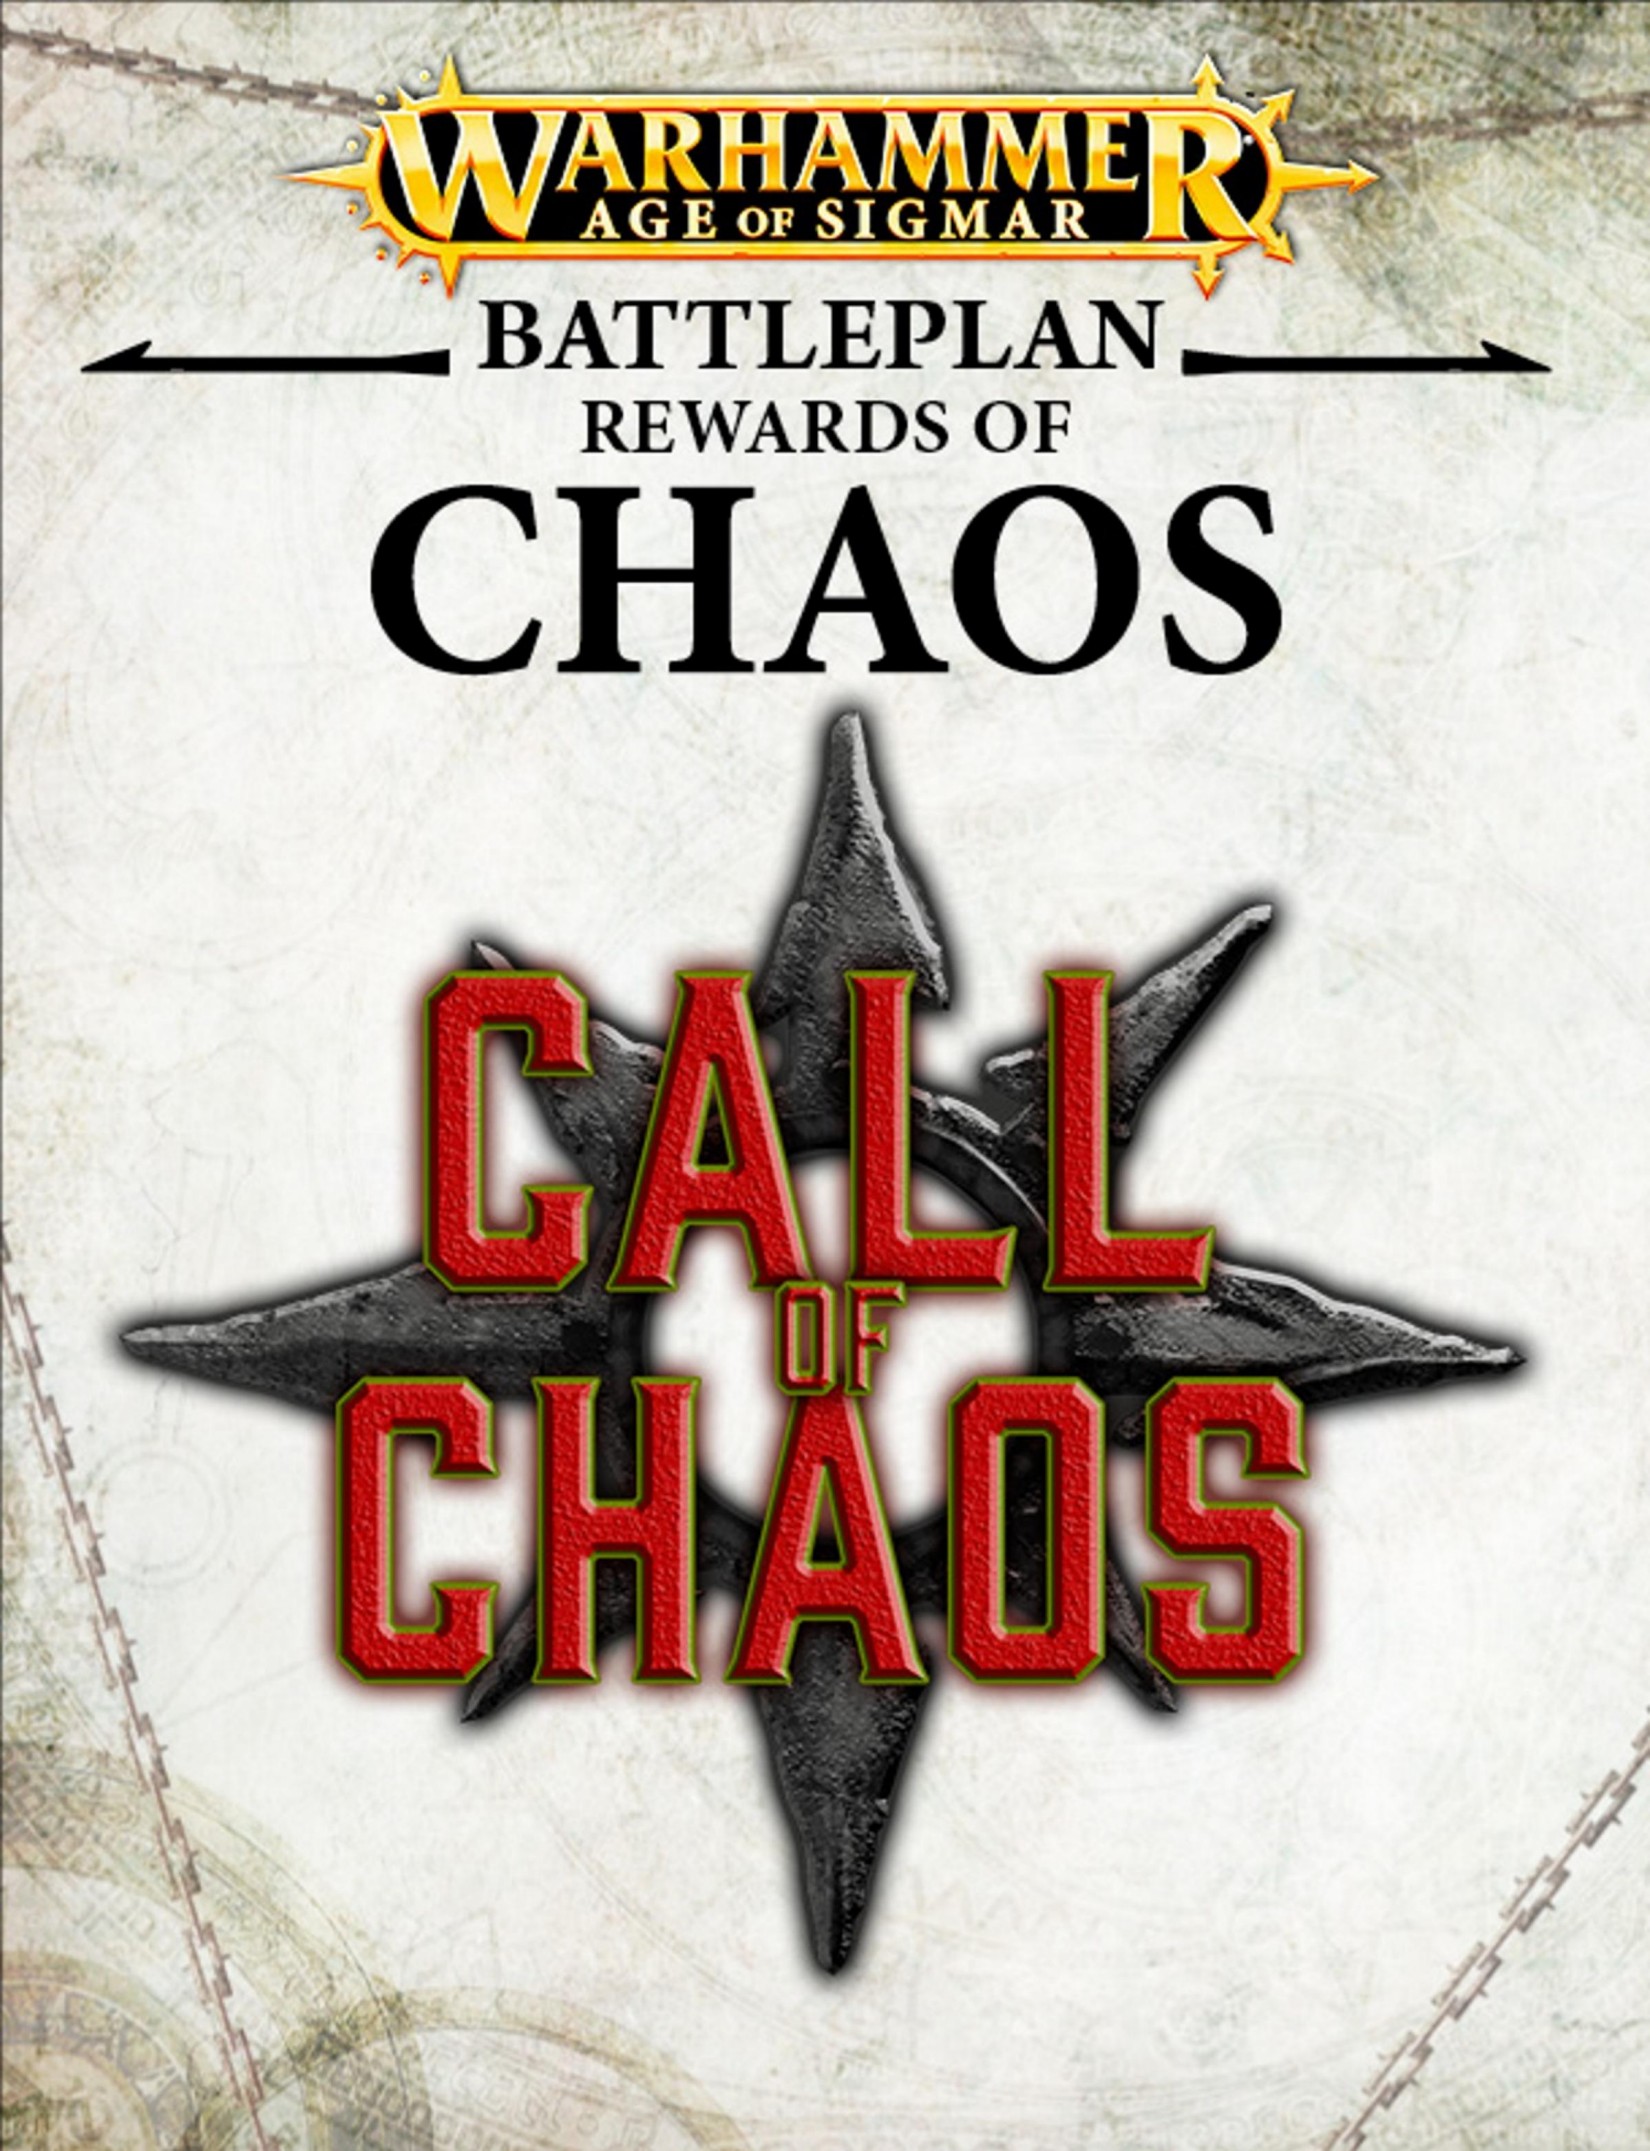 Warhammer: Age of Sigmar - Battleplan - Rewards of Chaos